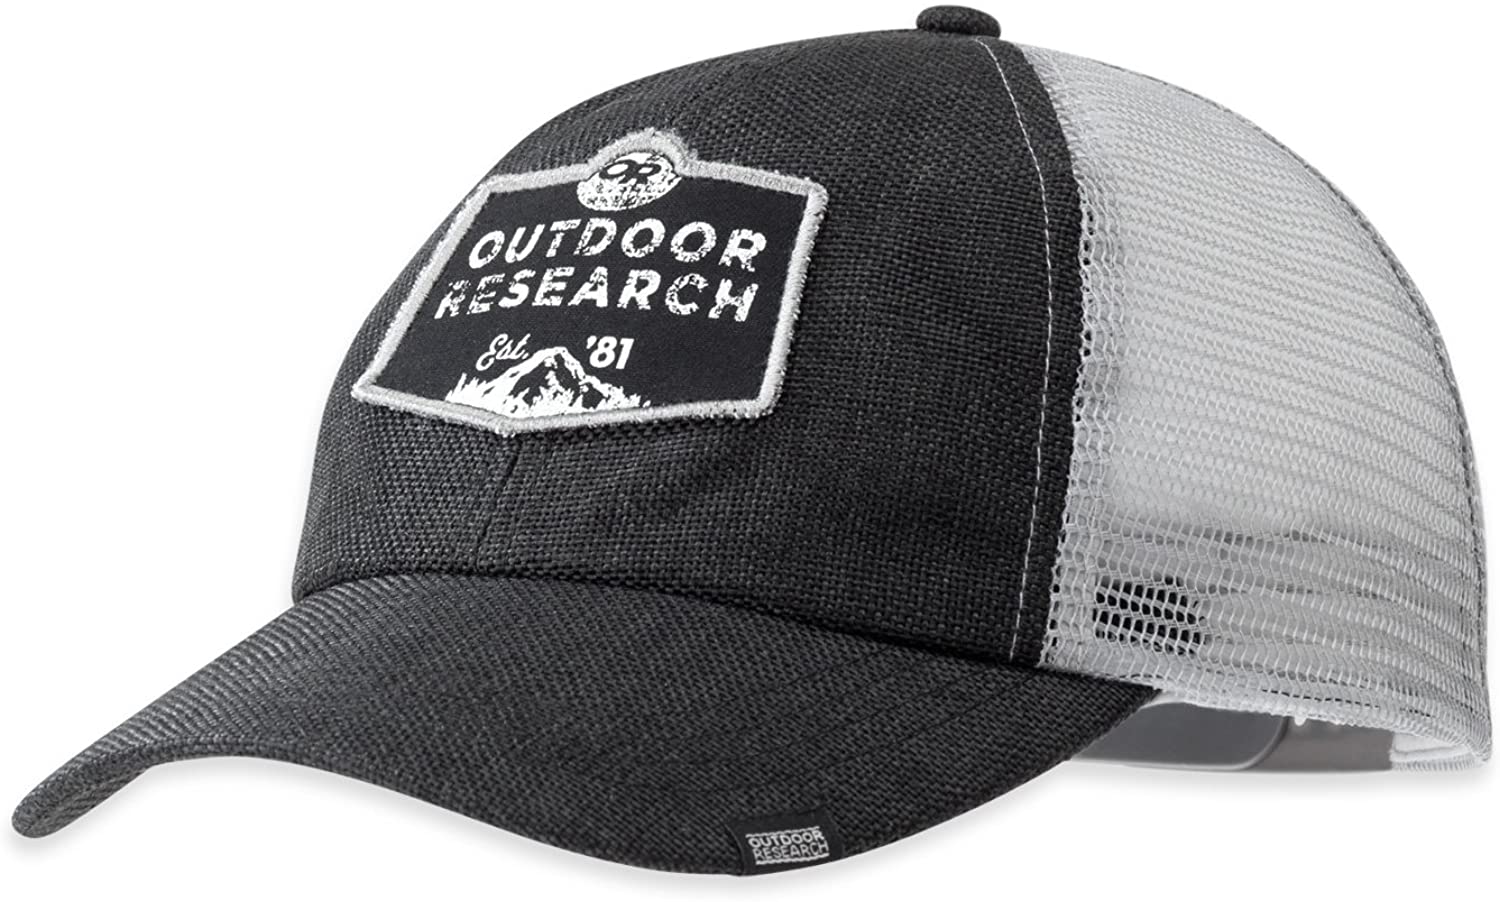 Outdoor Research Big Rig Cap